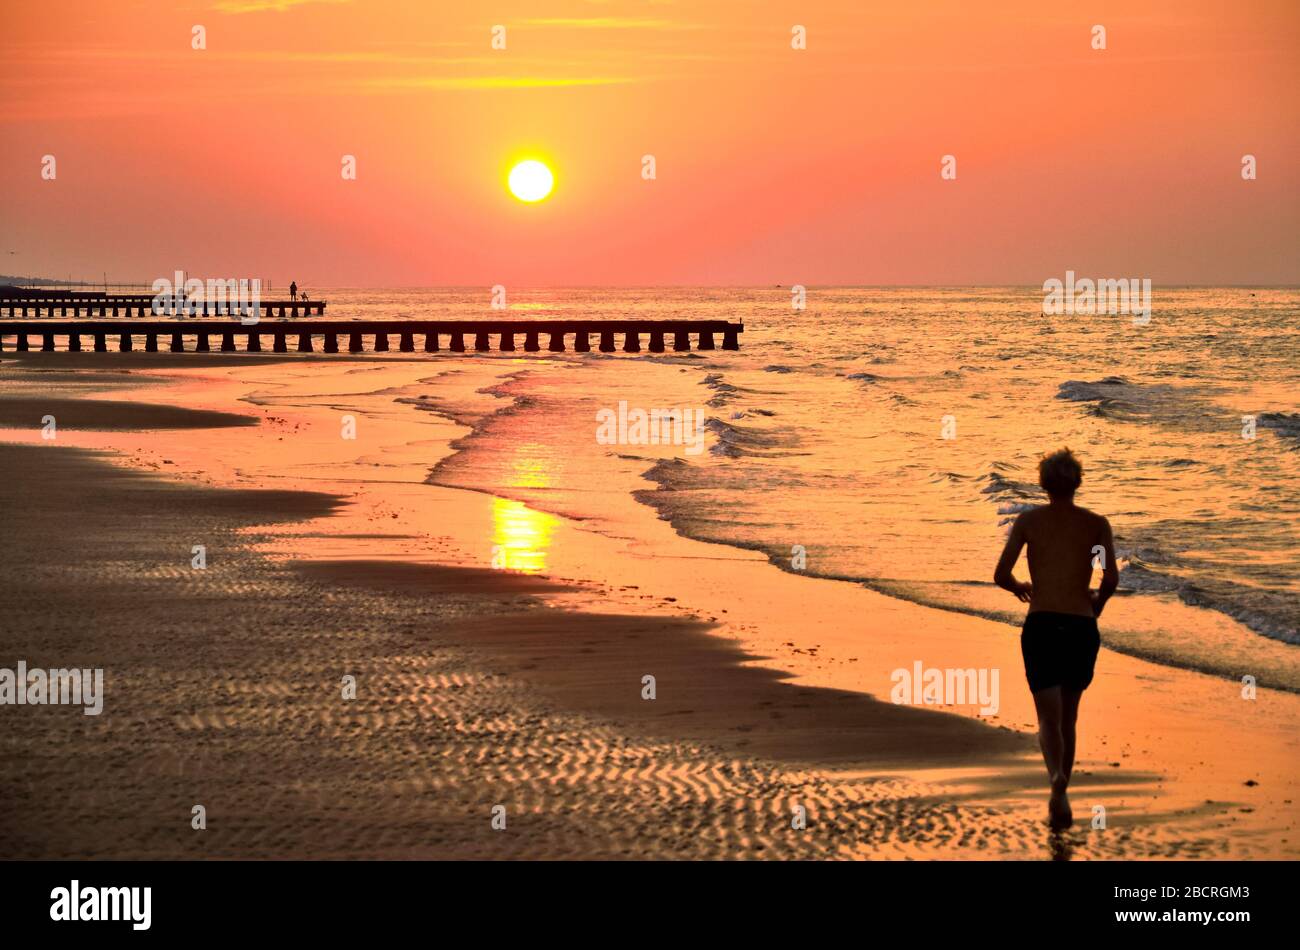 Silhouette des jungen Mannes, der bei Sonnenaufgang auf Strandsand läuft. Originaltapete aus dem aktiven Sommerurlaub. Stockfoto